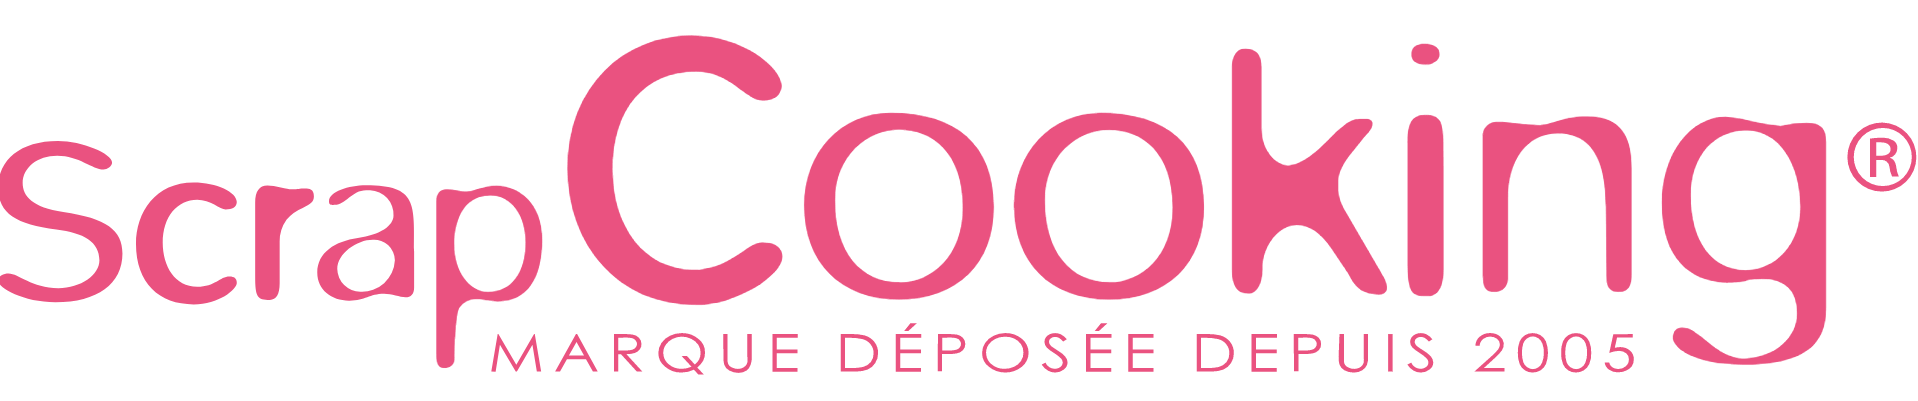 Logotype produits ScrapCooking